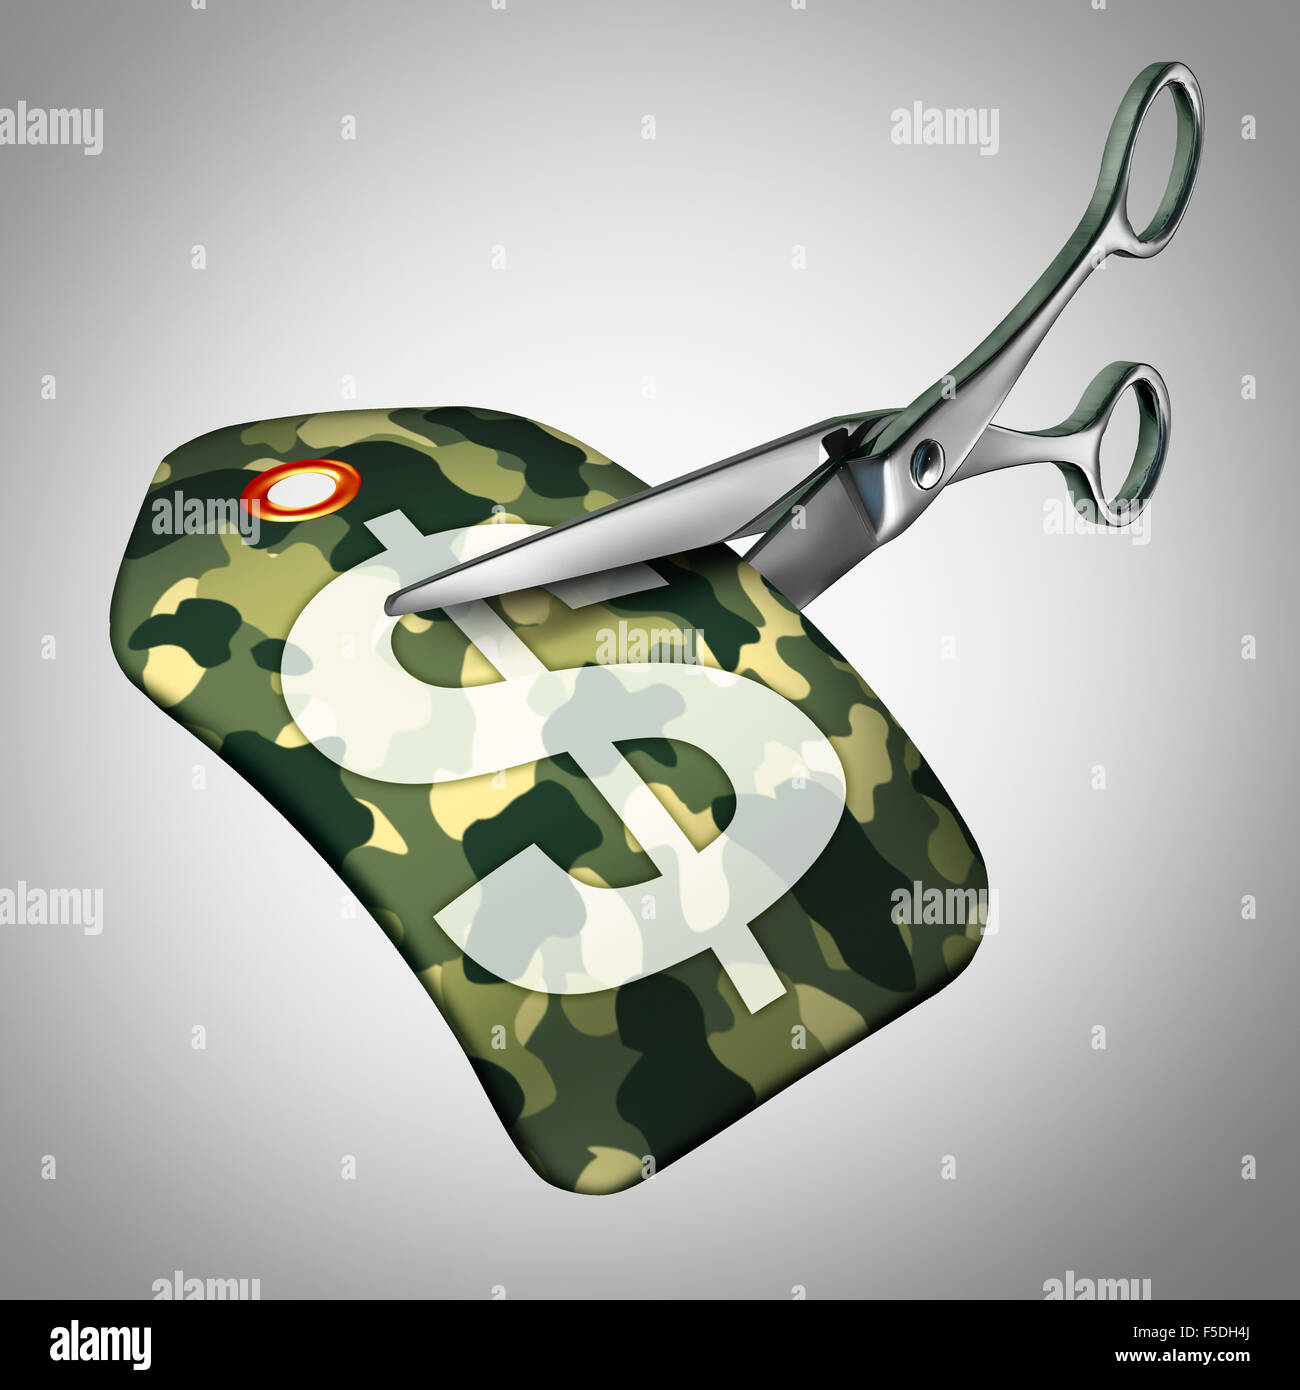 Les forces armées et la réduction des dépenses de défense comme un symbole de réduction comme une étiquette de prix avec un motif de camouflage Banque D'Images